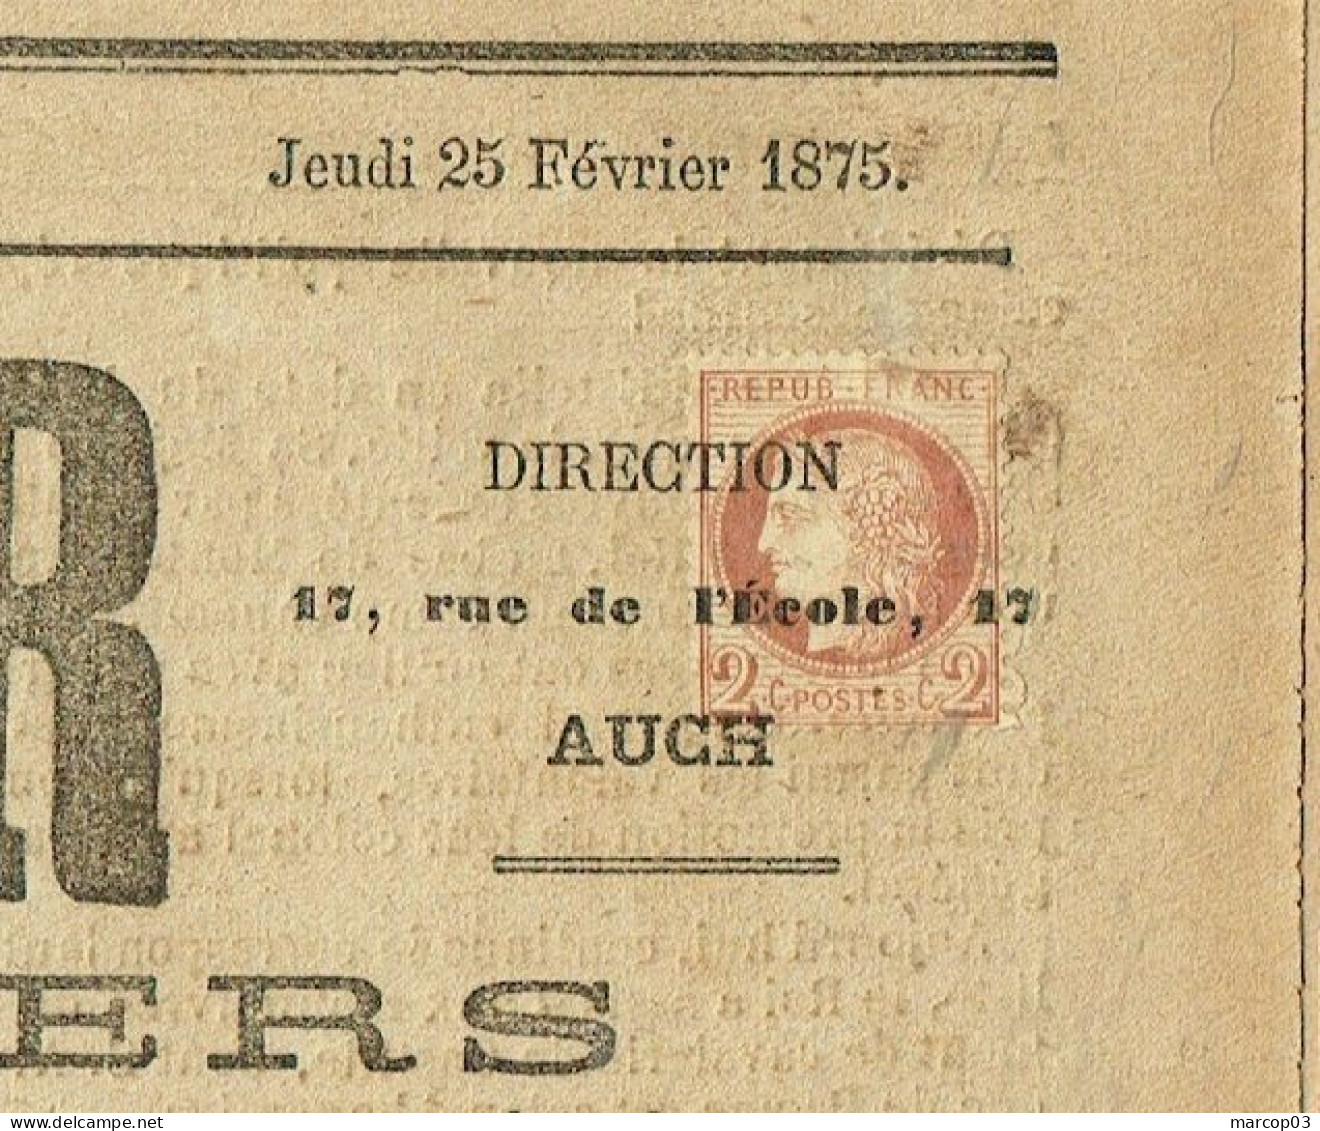 32 GERS Journal Le Conservateur Du 25/02/1875 2 C Cérès N° 51 Obl Typo Journal Complet TTB - Newspapers